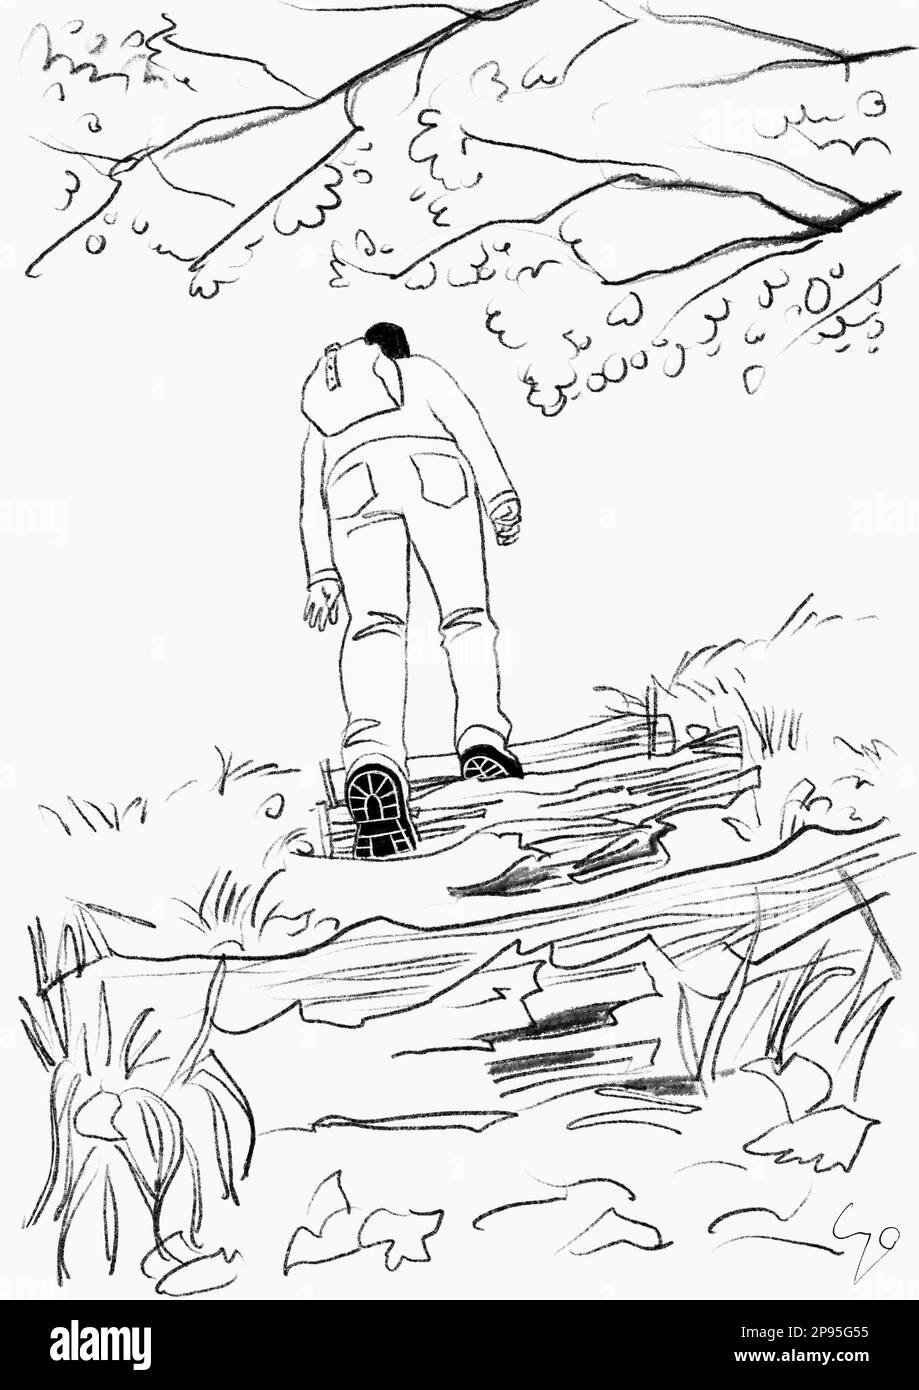 Randonneur sur une via ferrata en paysage d'automne. dessin / illustration de lignes noir et blanc Banque D'Images